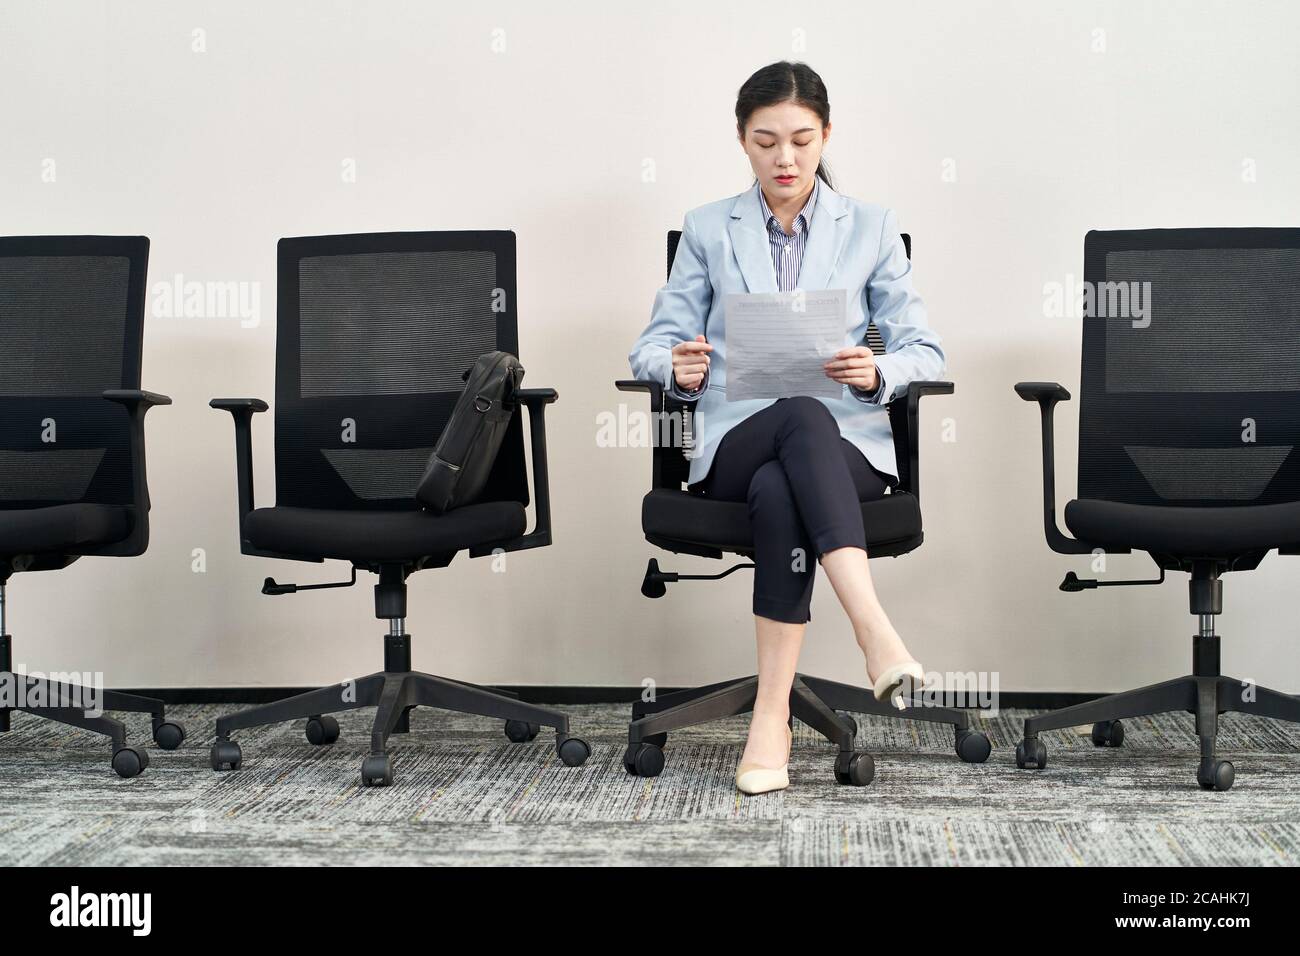 jeune femme asiatique qui cherche un emploi assise sur une chaise pour se préparer à l'entrevue en attendant dans la file d'attente Banque D'Images